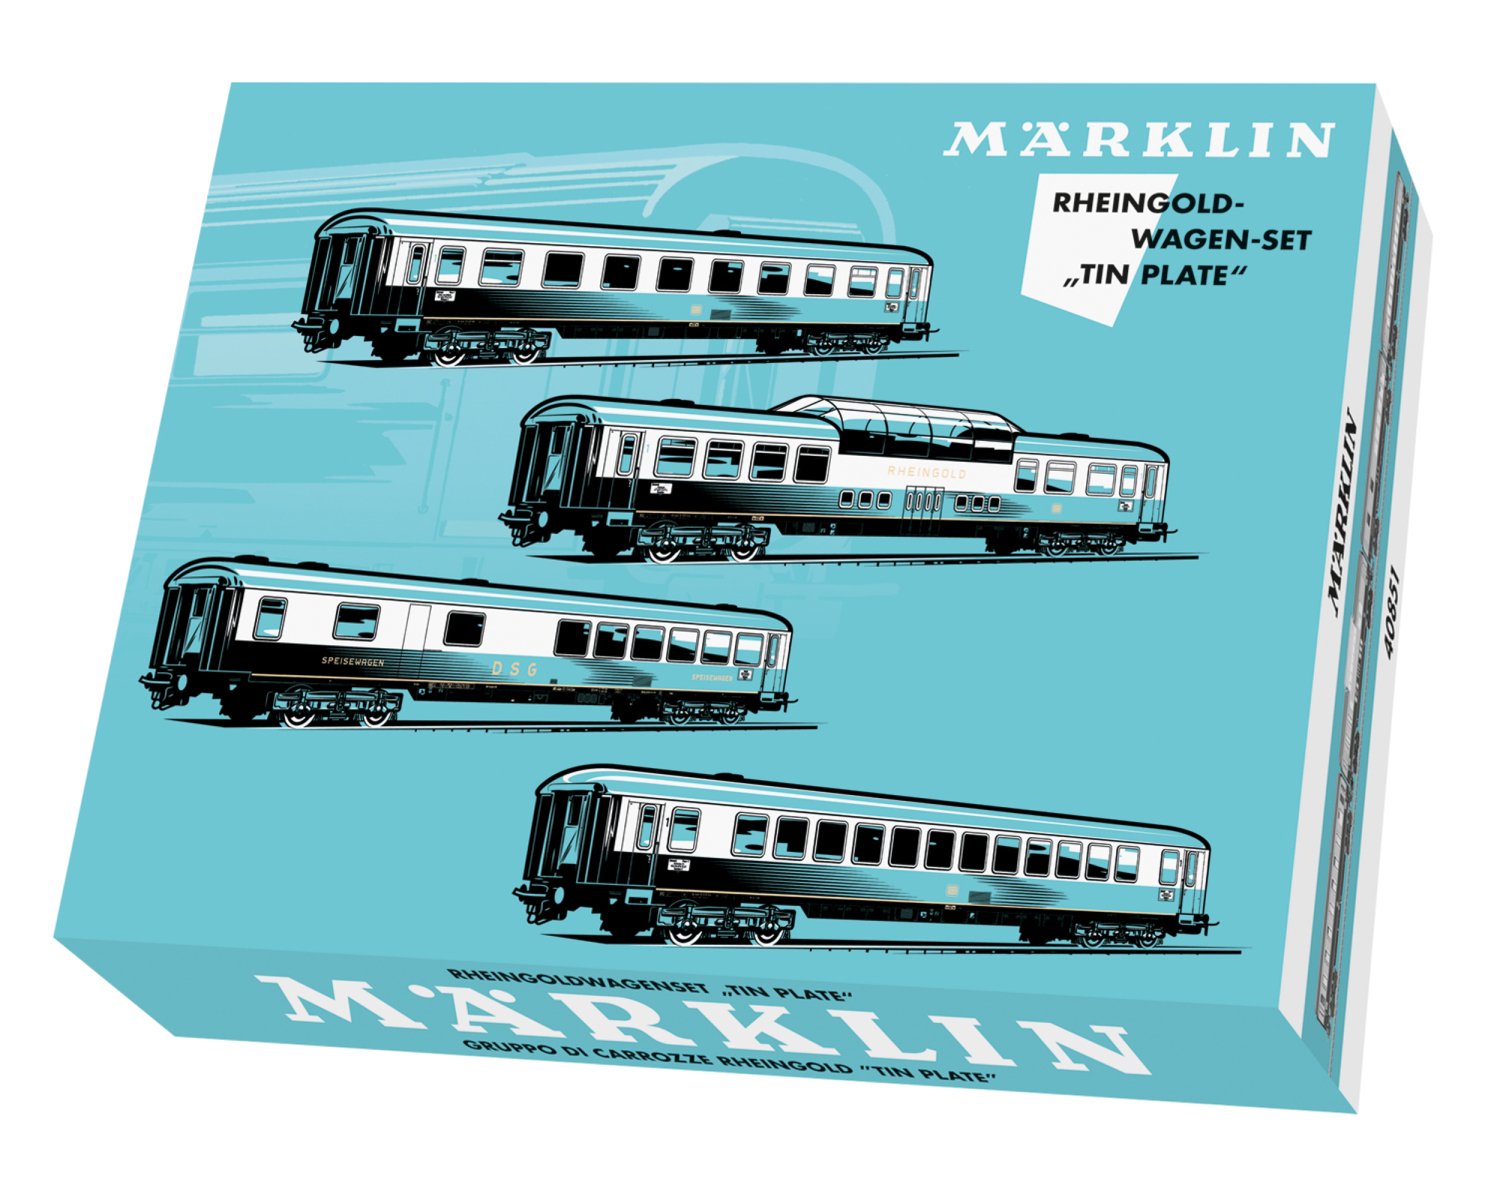 メルクリン(Marklin) HO ラインゴルト客車セット 40851 | 電流タイプ 